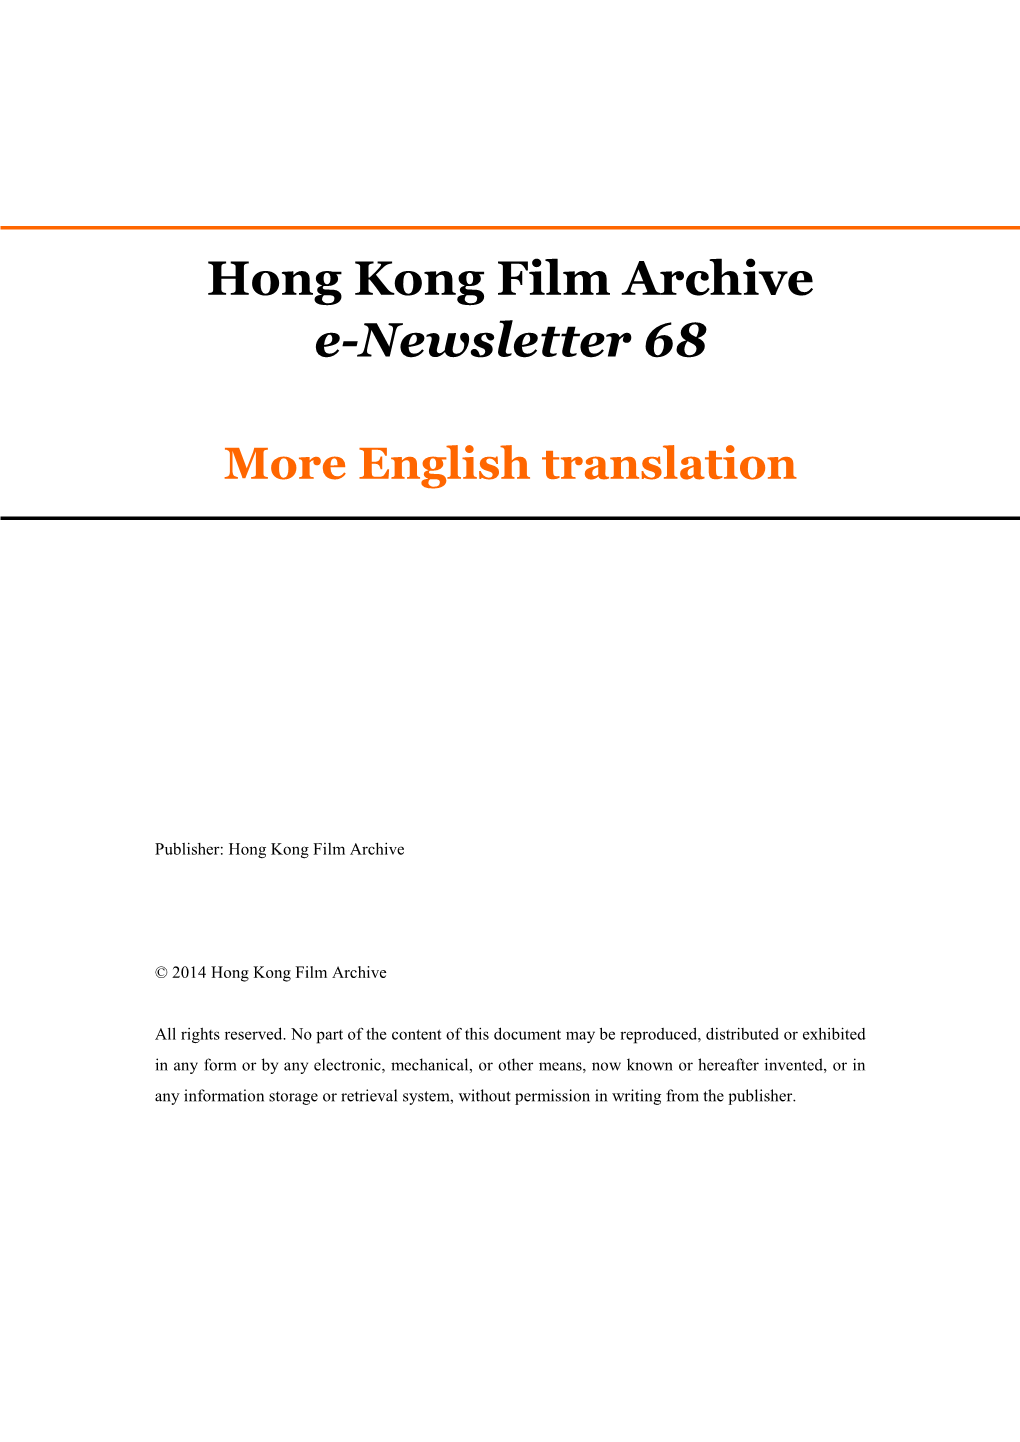 Hong Kong Film Archive E-Newsletter 68